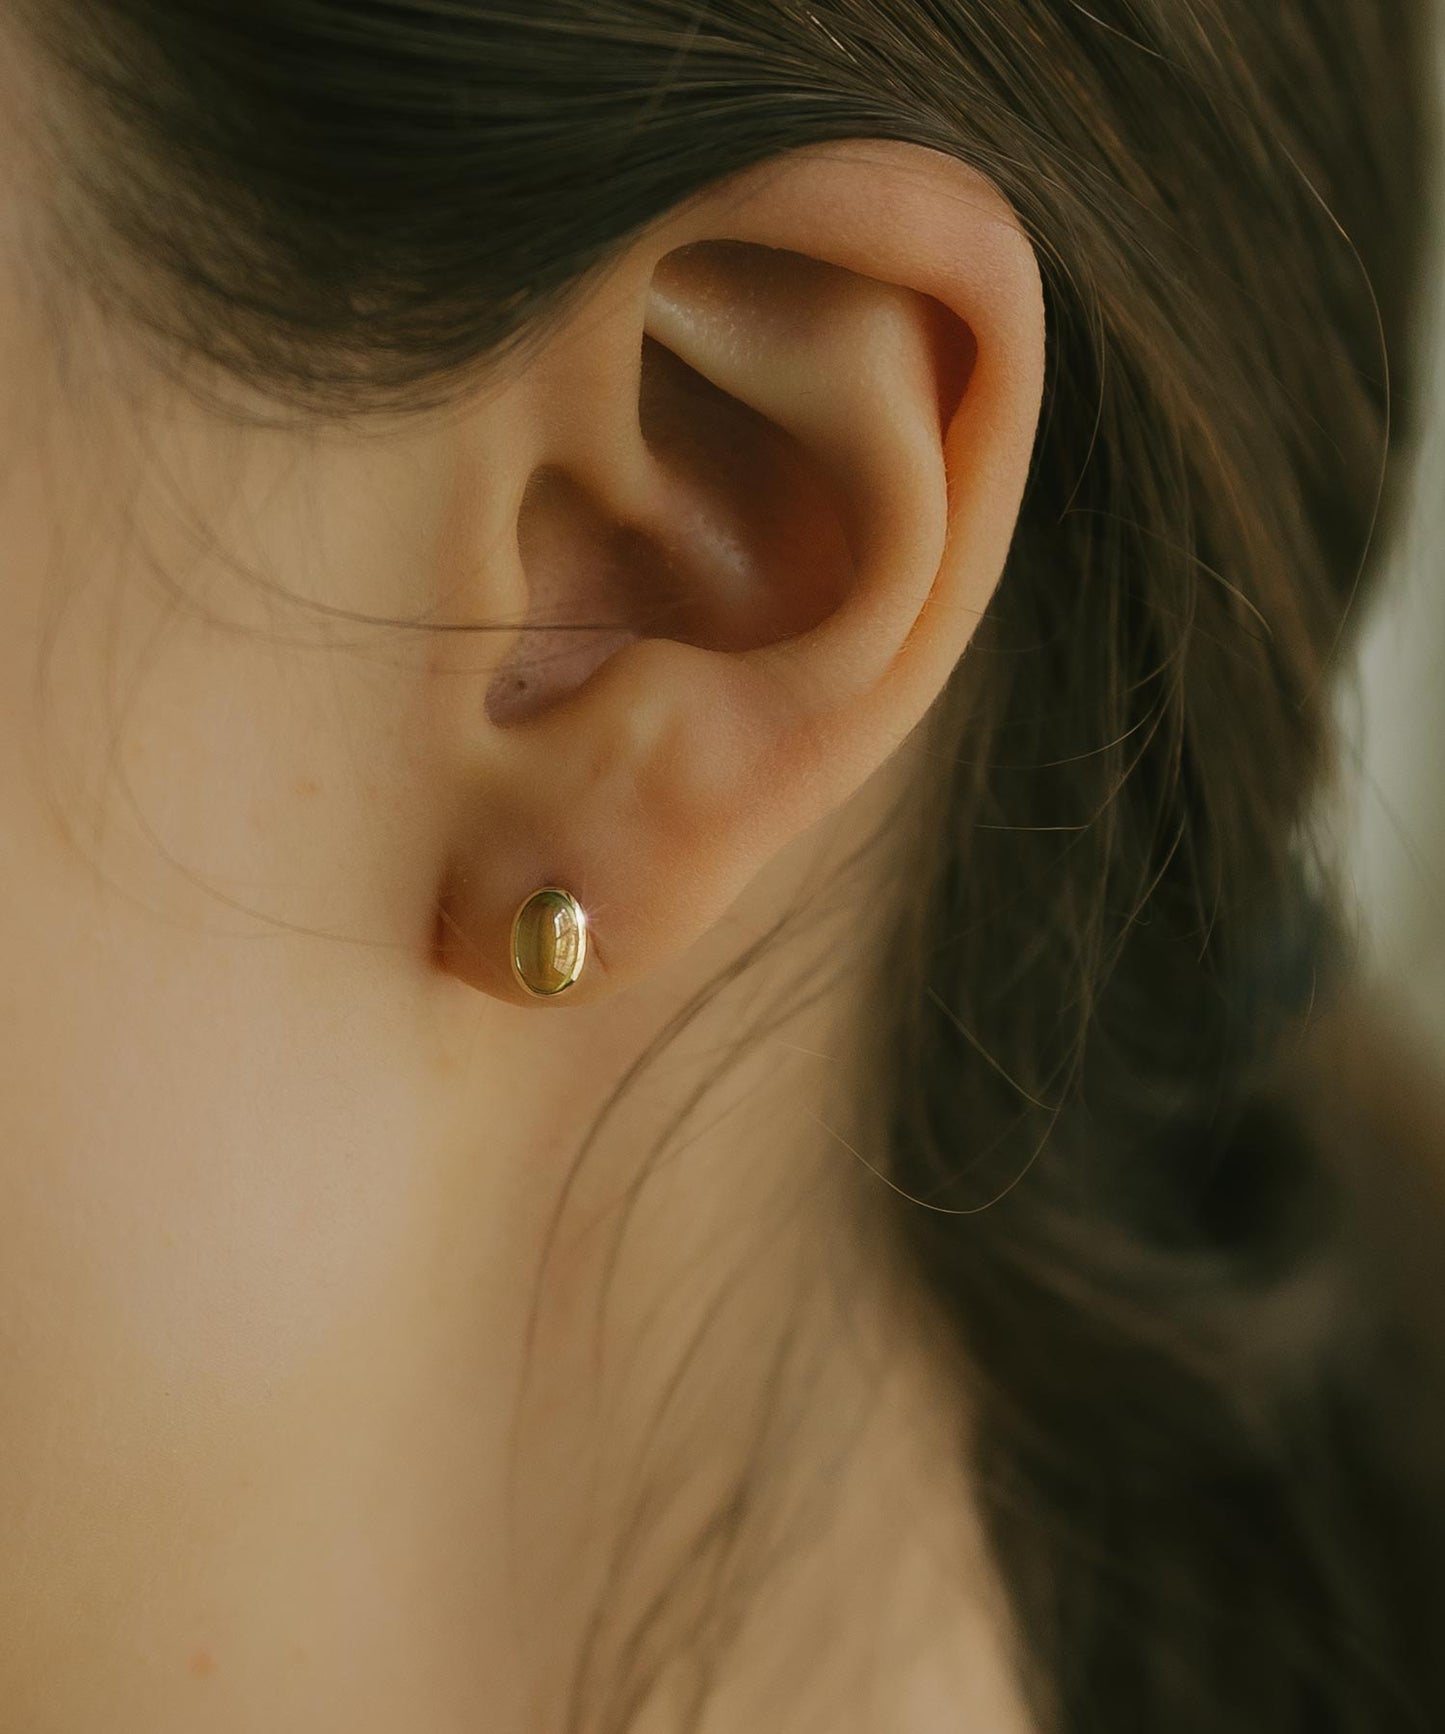 K18 Glossy Oval Peridot Earrings | ENLILLE-OLIVA EARRINGS